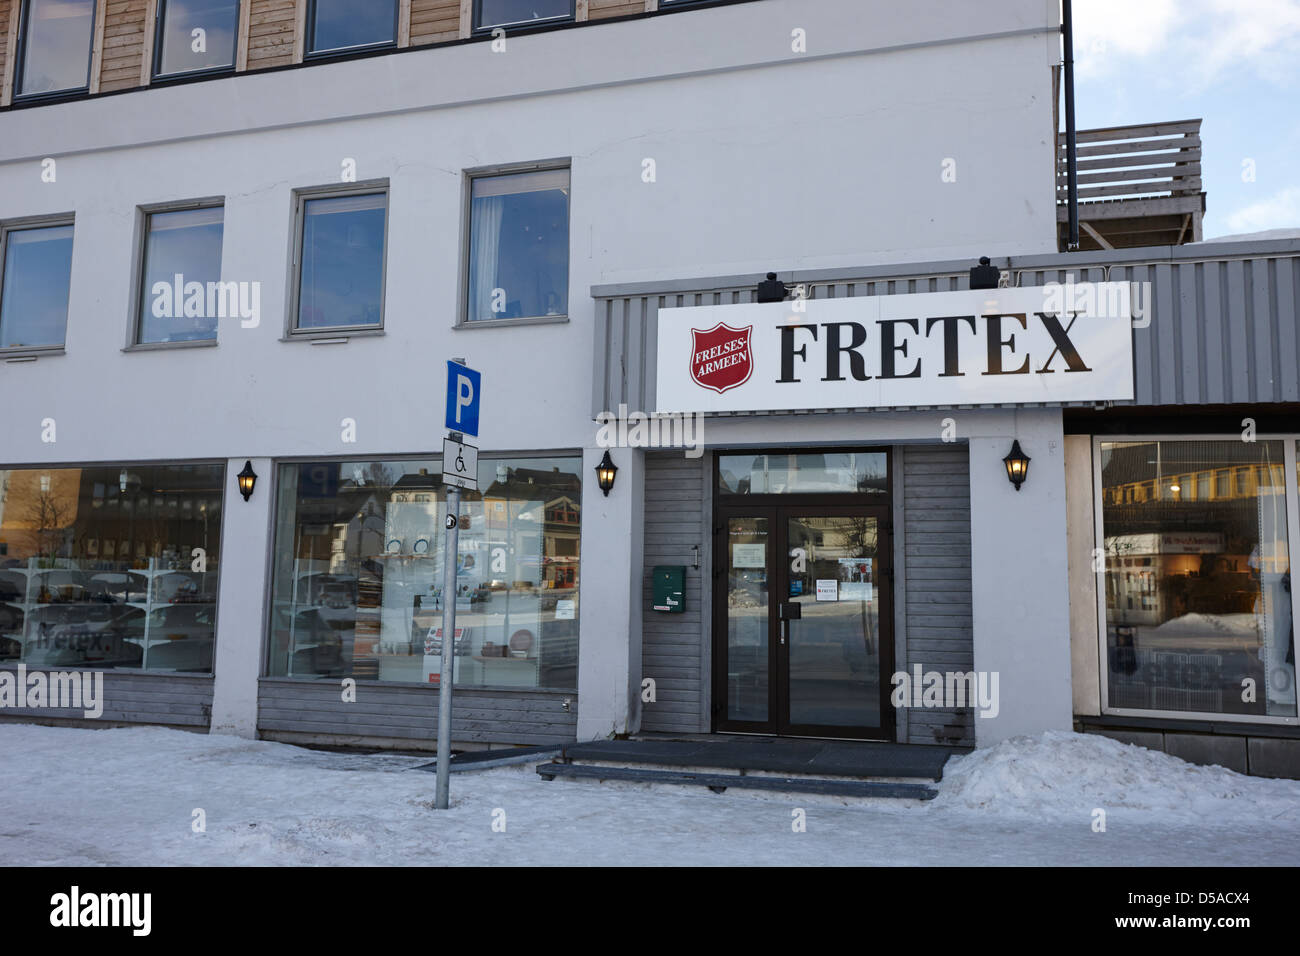 L'Armée du salut norvégien shop social enterprise fretex kirkenes Norvège finnmark europe Banque D'Images